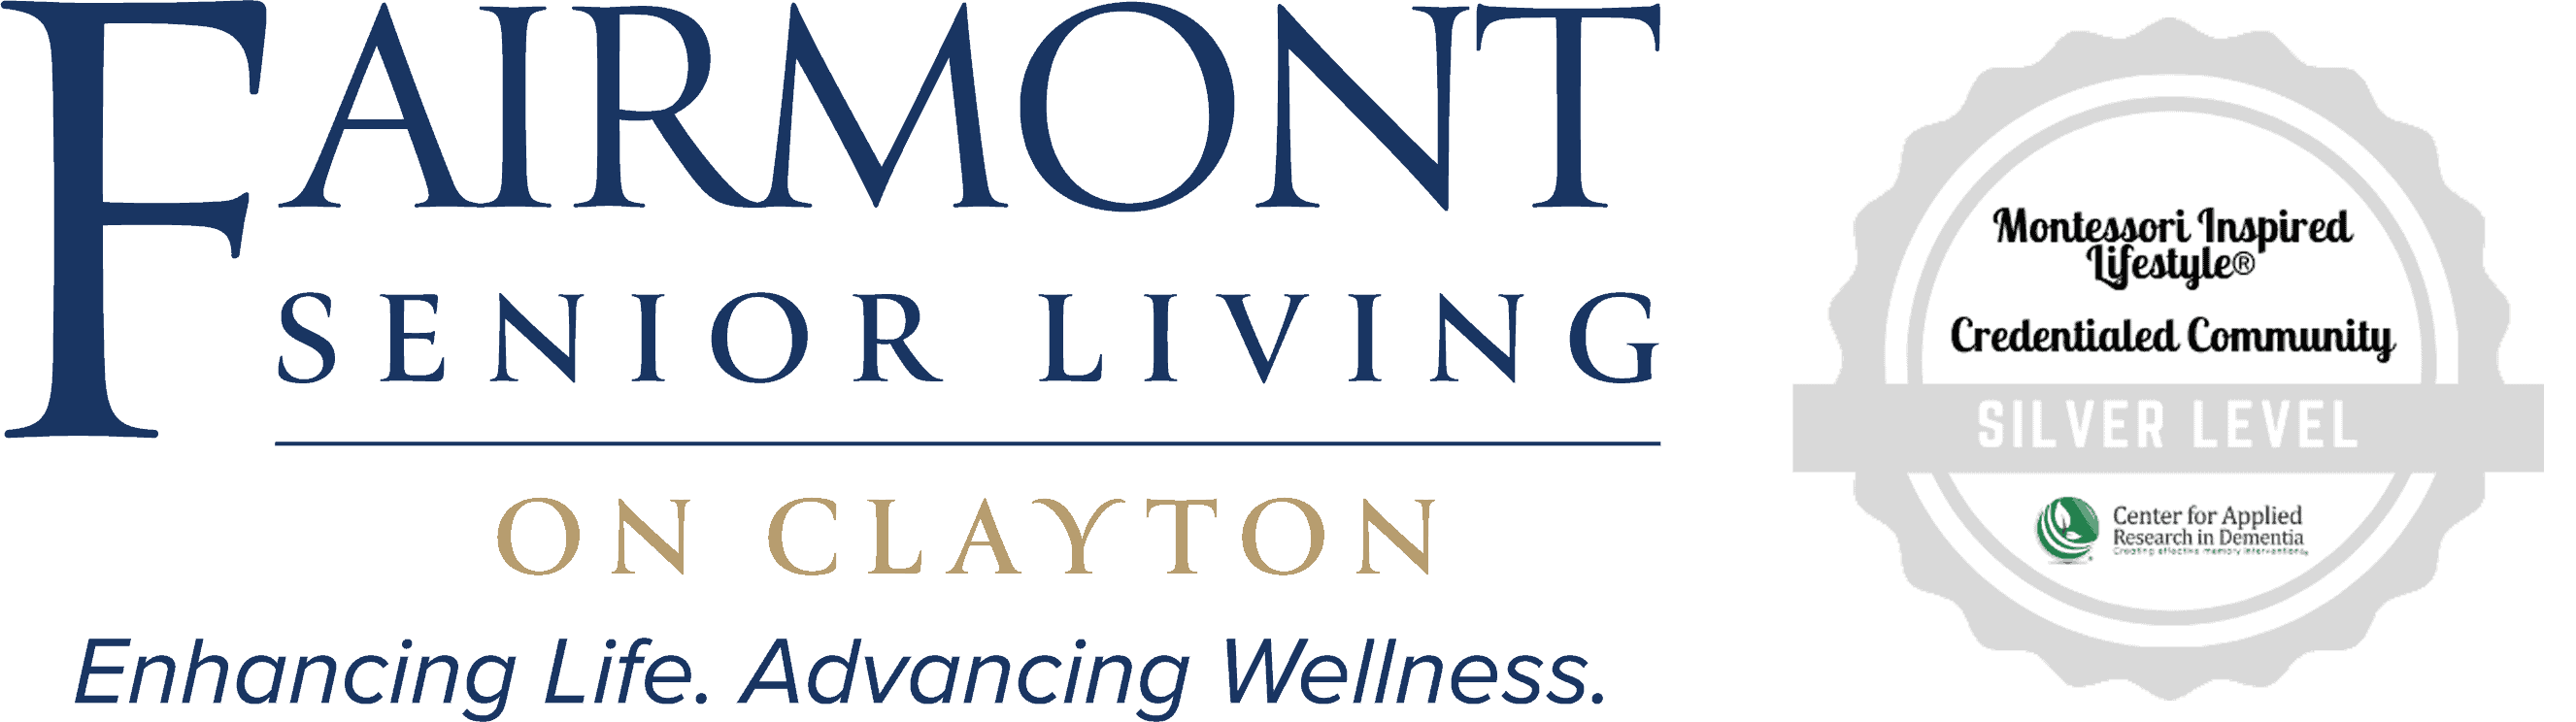 Fairmont Senior Living on Clayton Logo